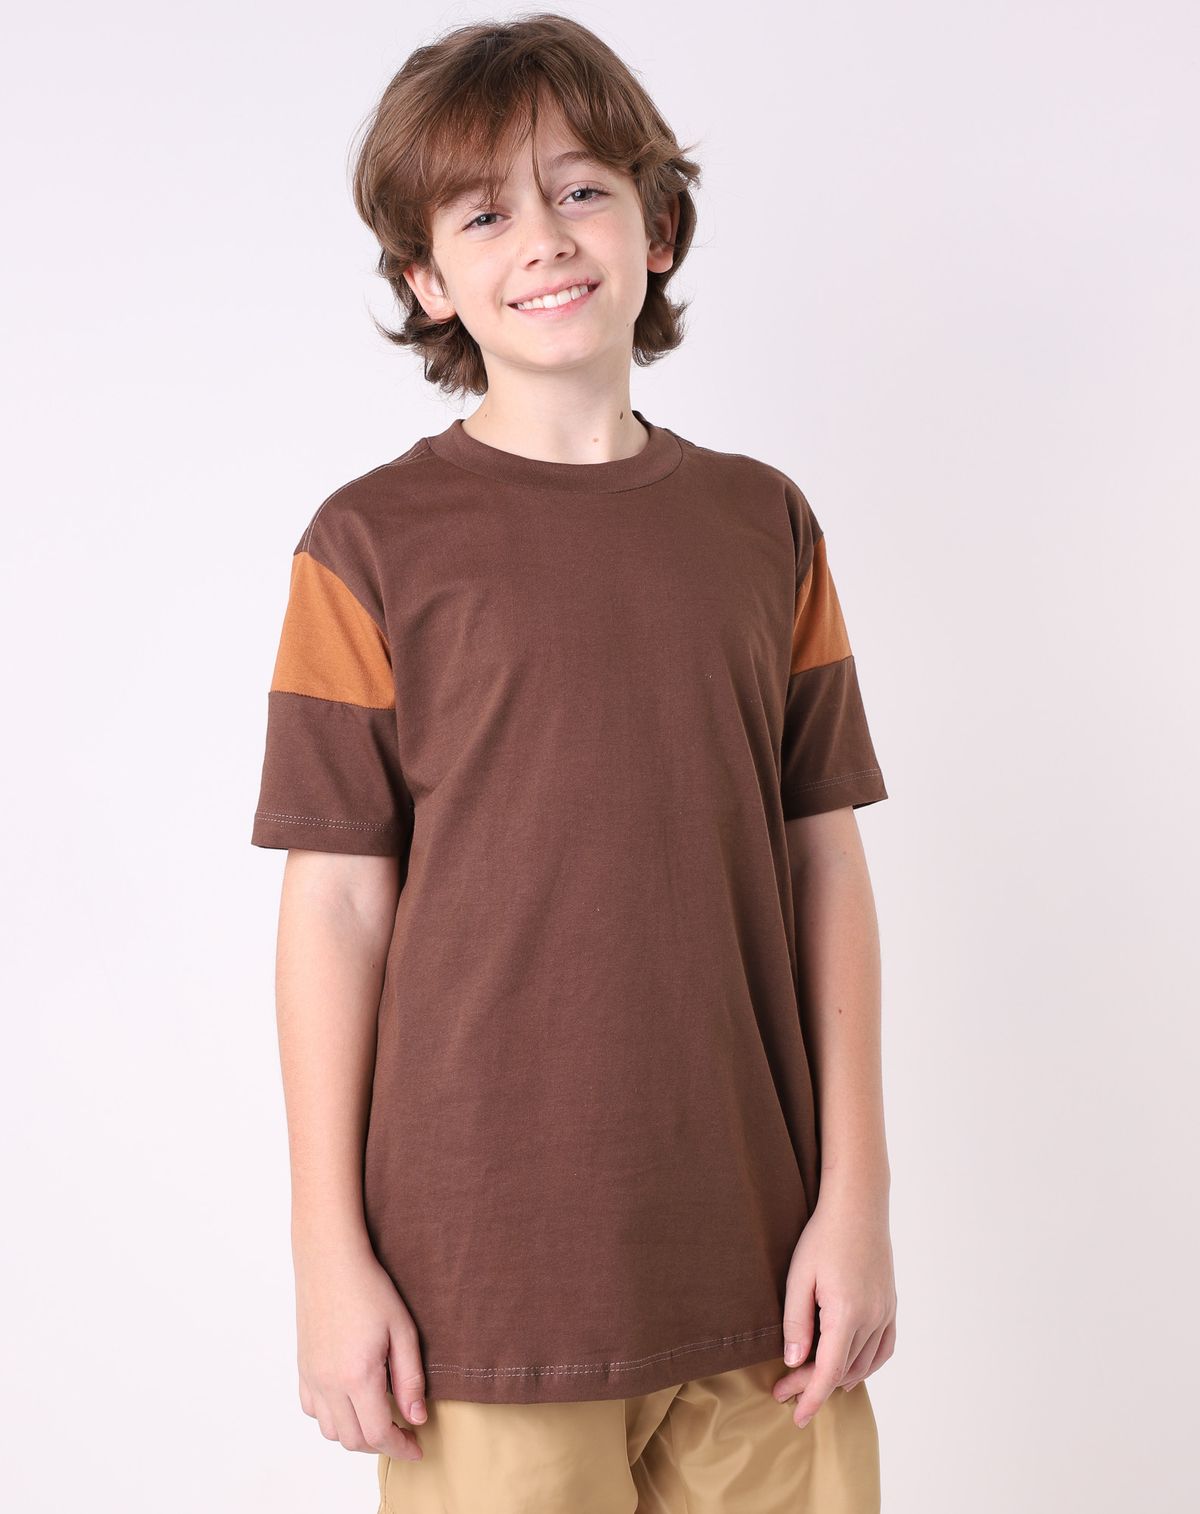 Camiseta Manga Curta Juvenil Menino Estampa Lettering marrom - 10